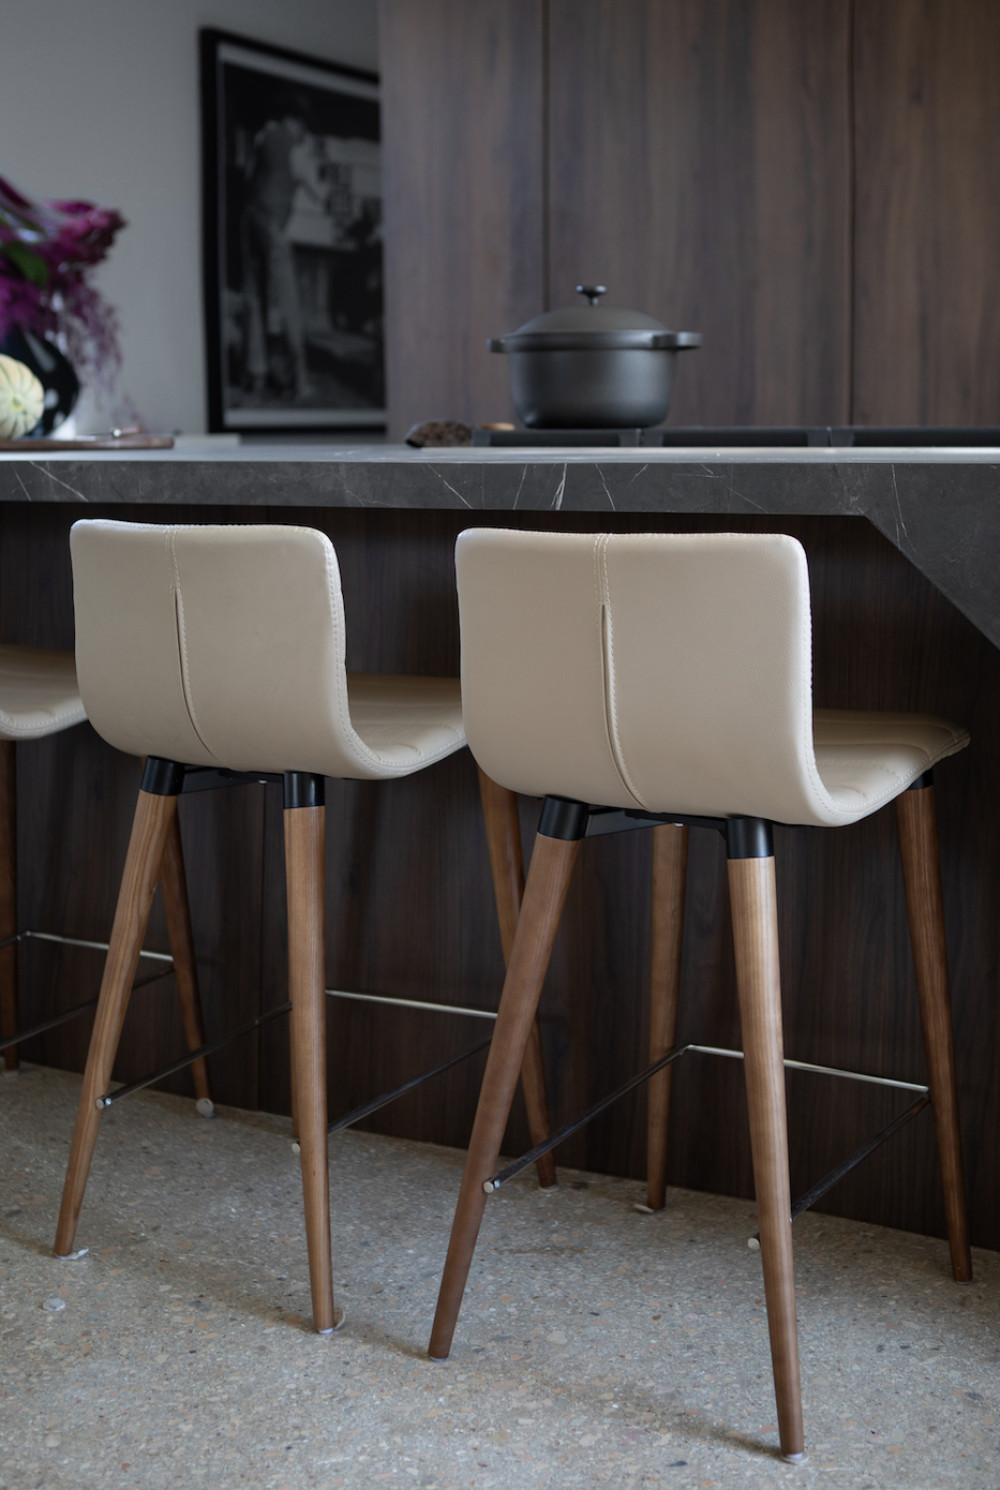 interior-design-kitchen-blach-high-chairs